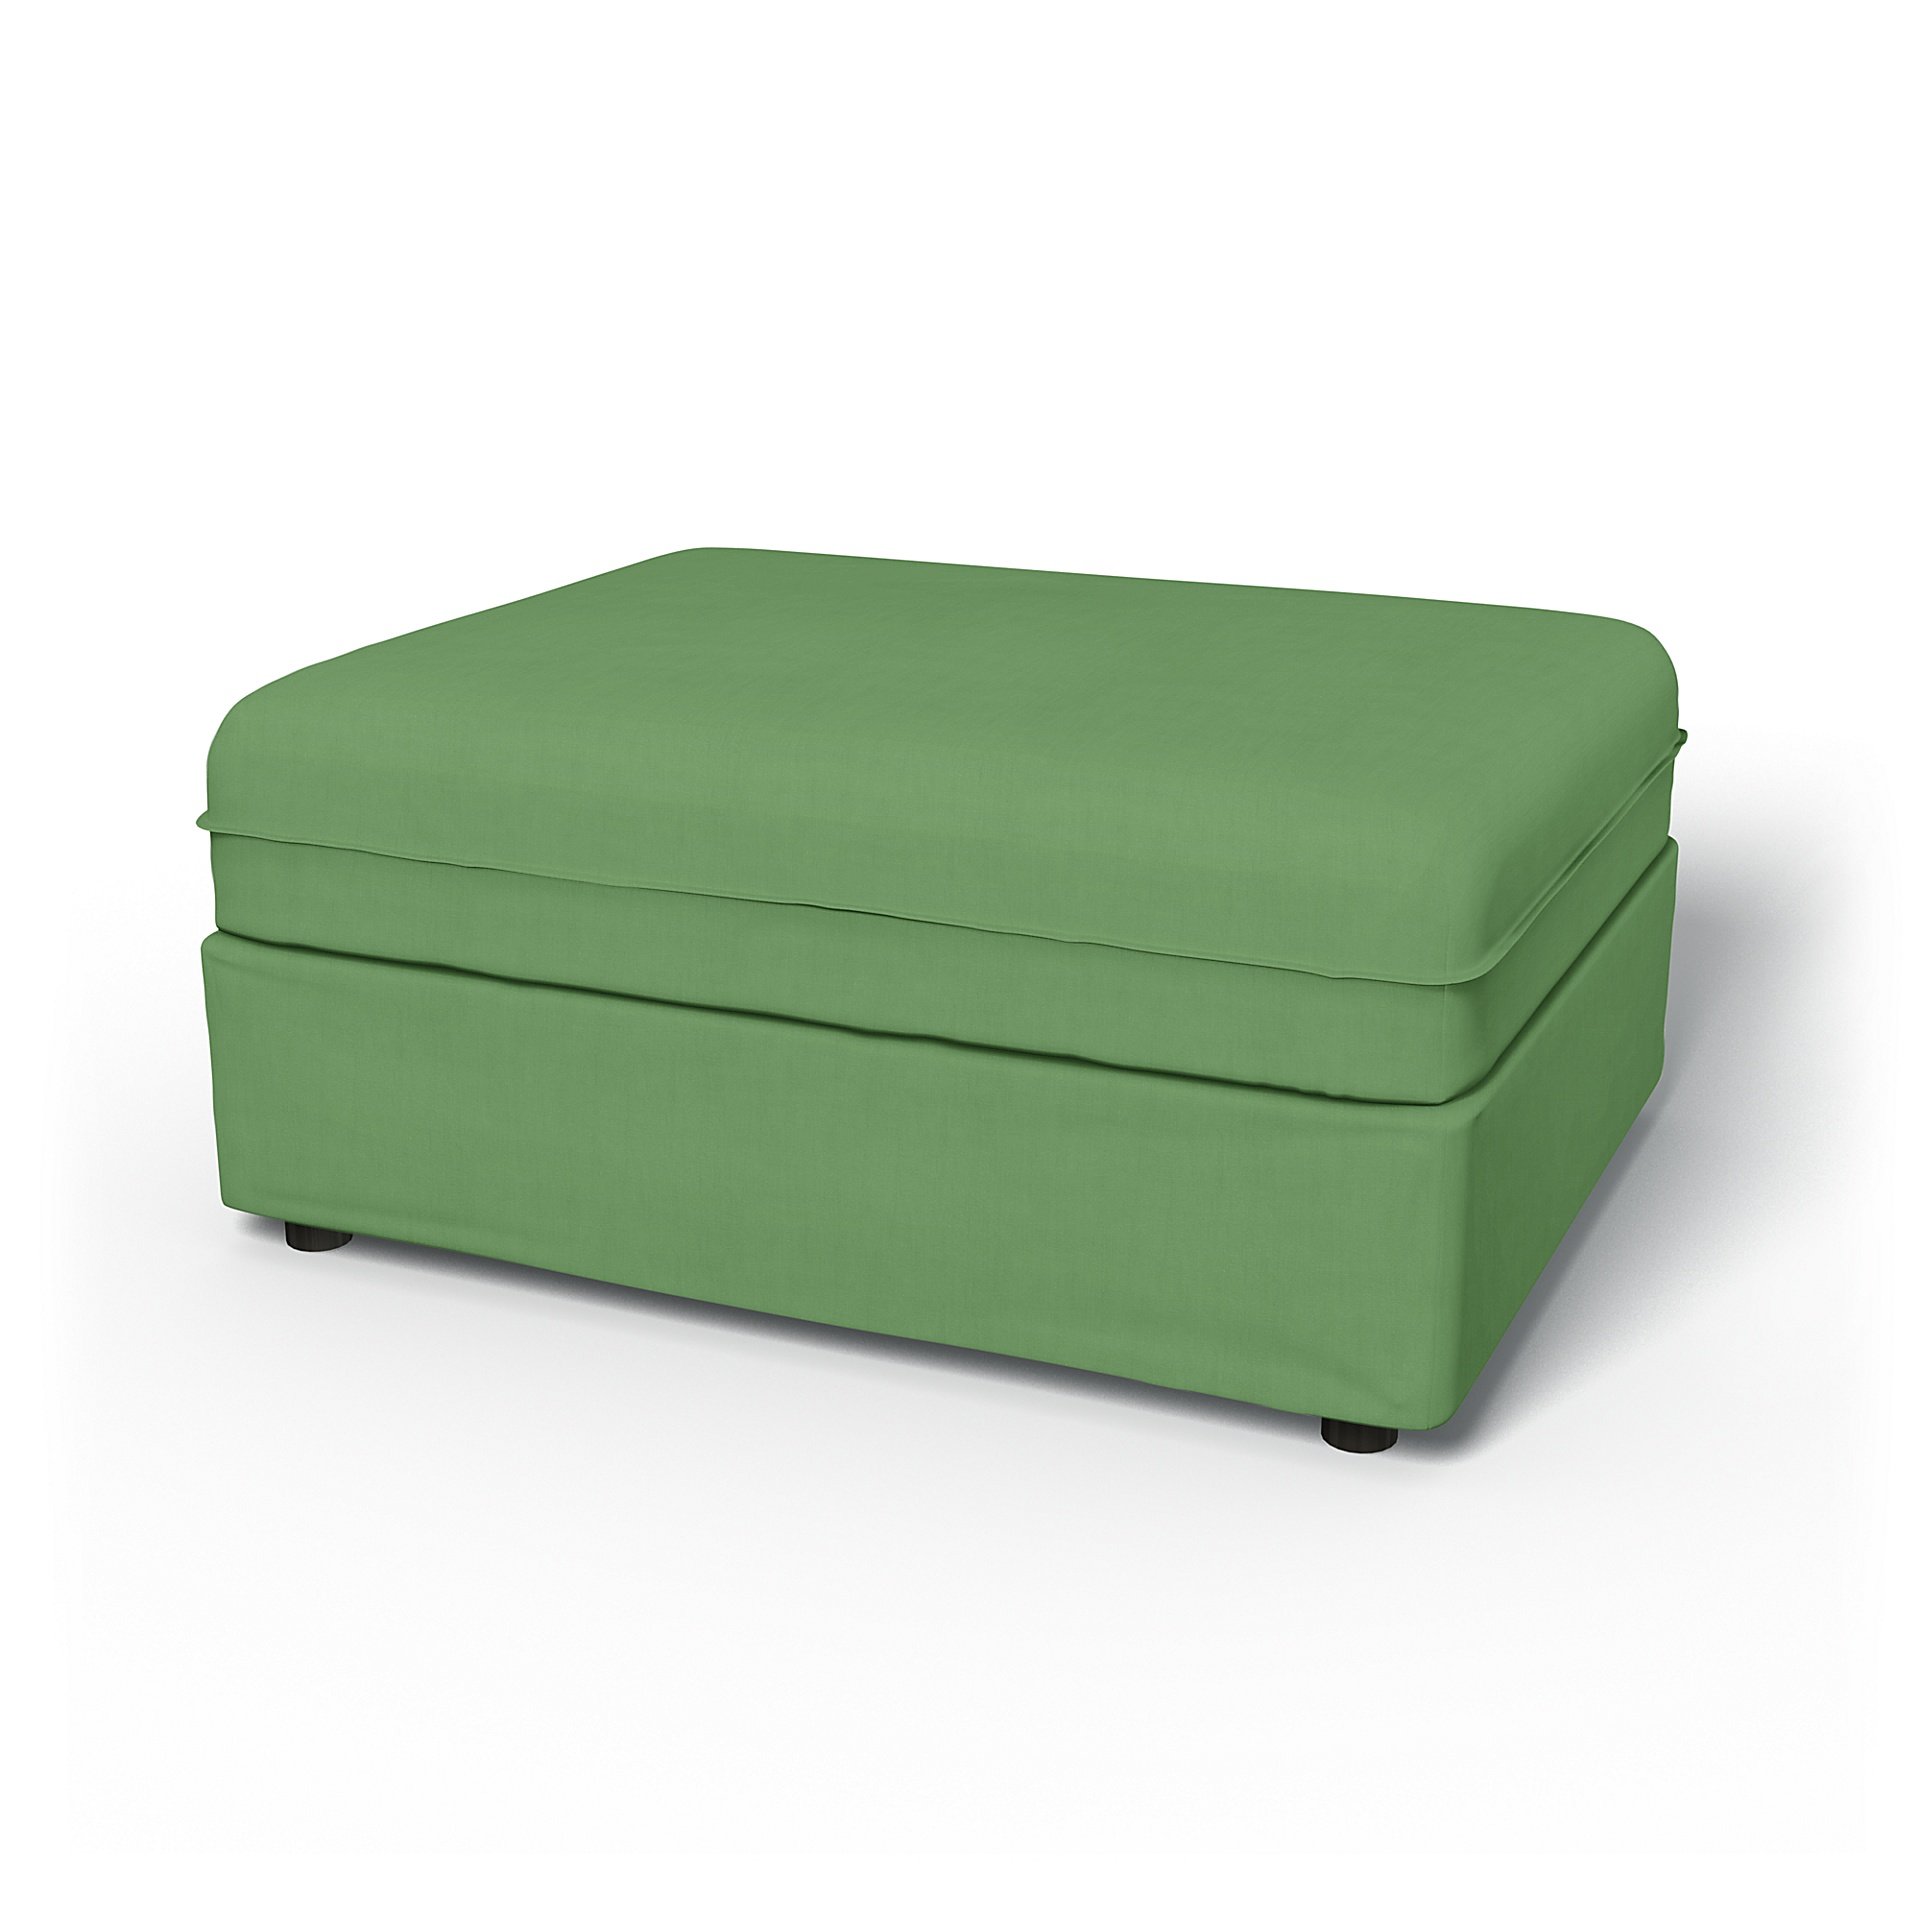 IKEA - Vallentuna Seat Module Cover 100x80cm 39x32in, Apple Green, Linen - Bemz